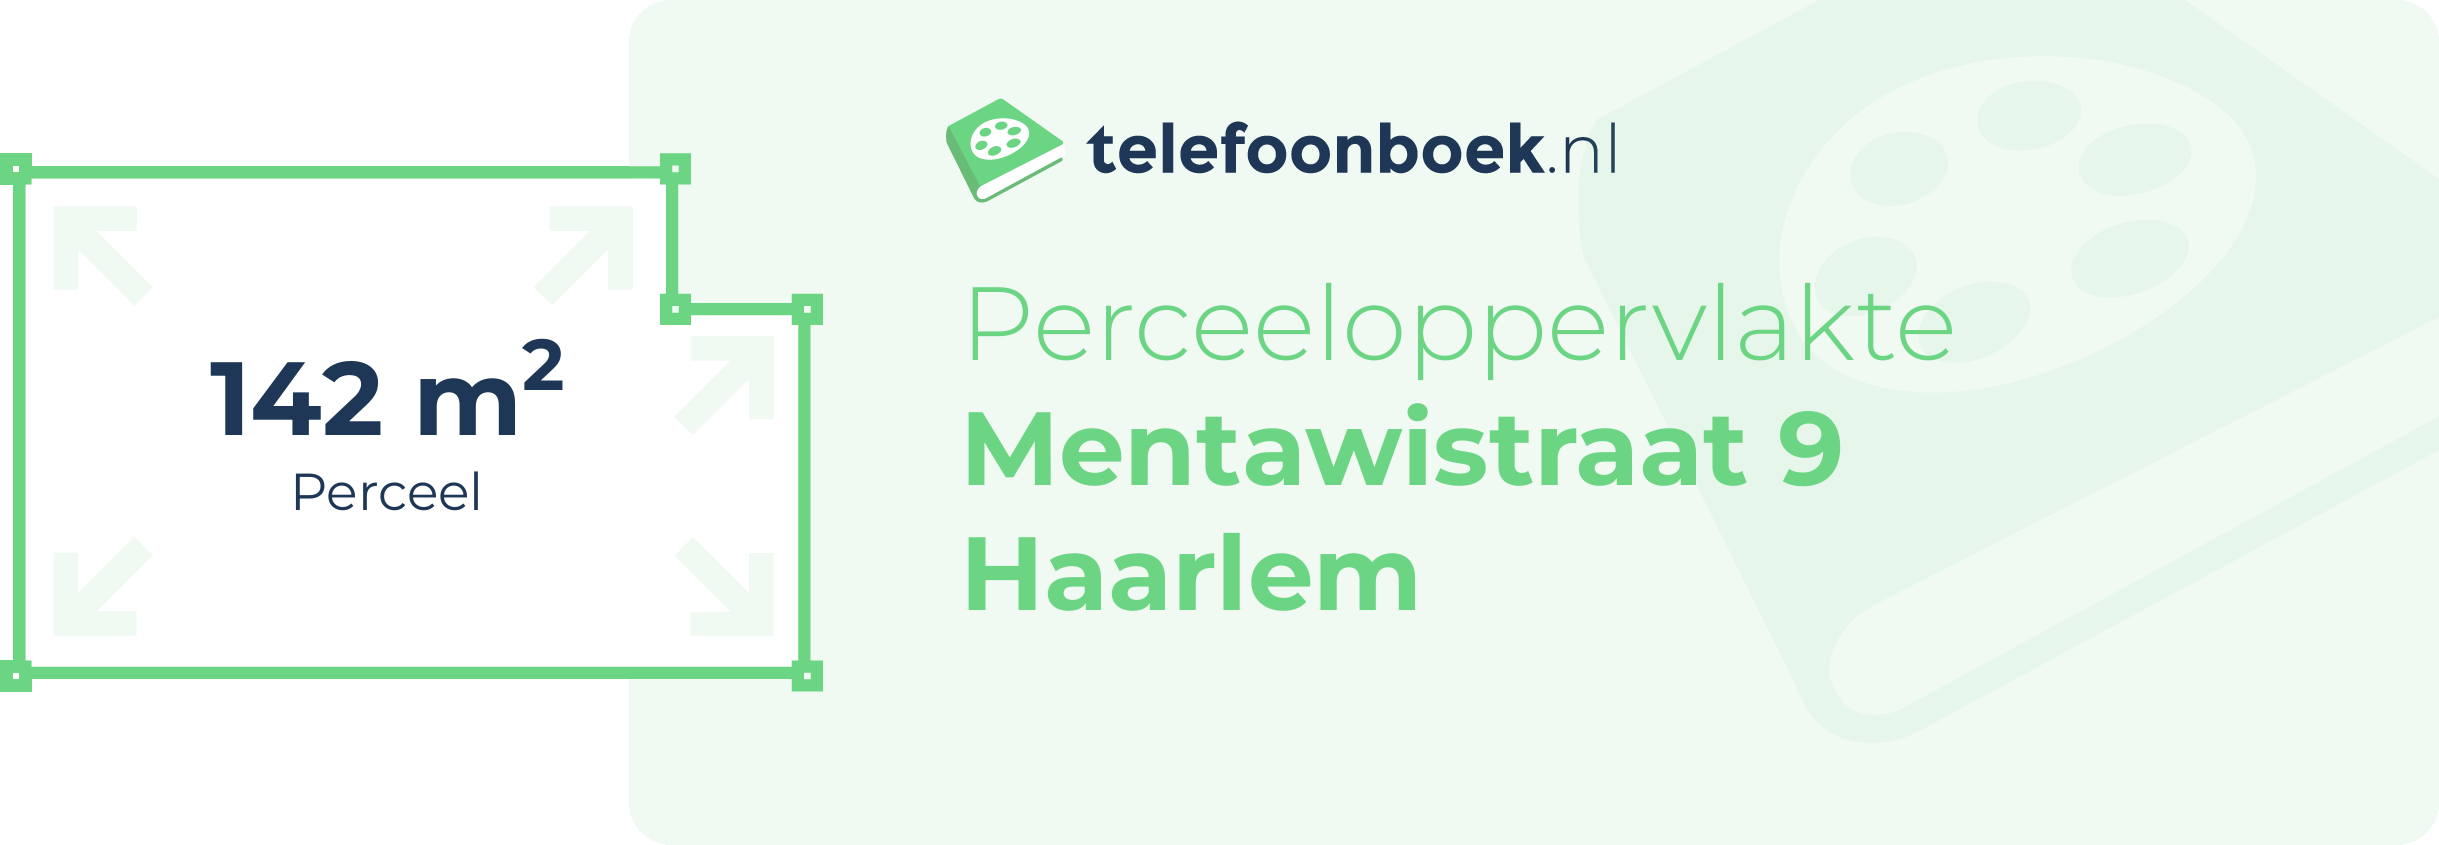 Perceeloppervlakte Mentawistraat 9 Haarlem